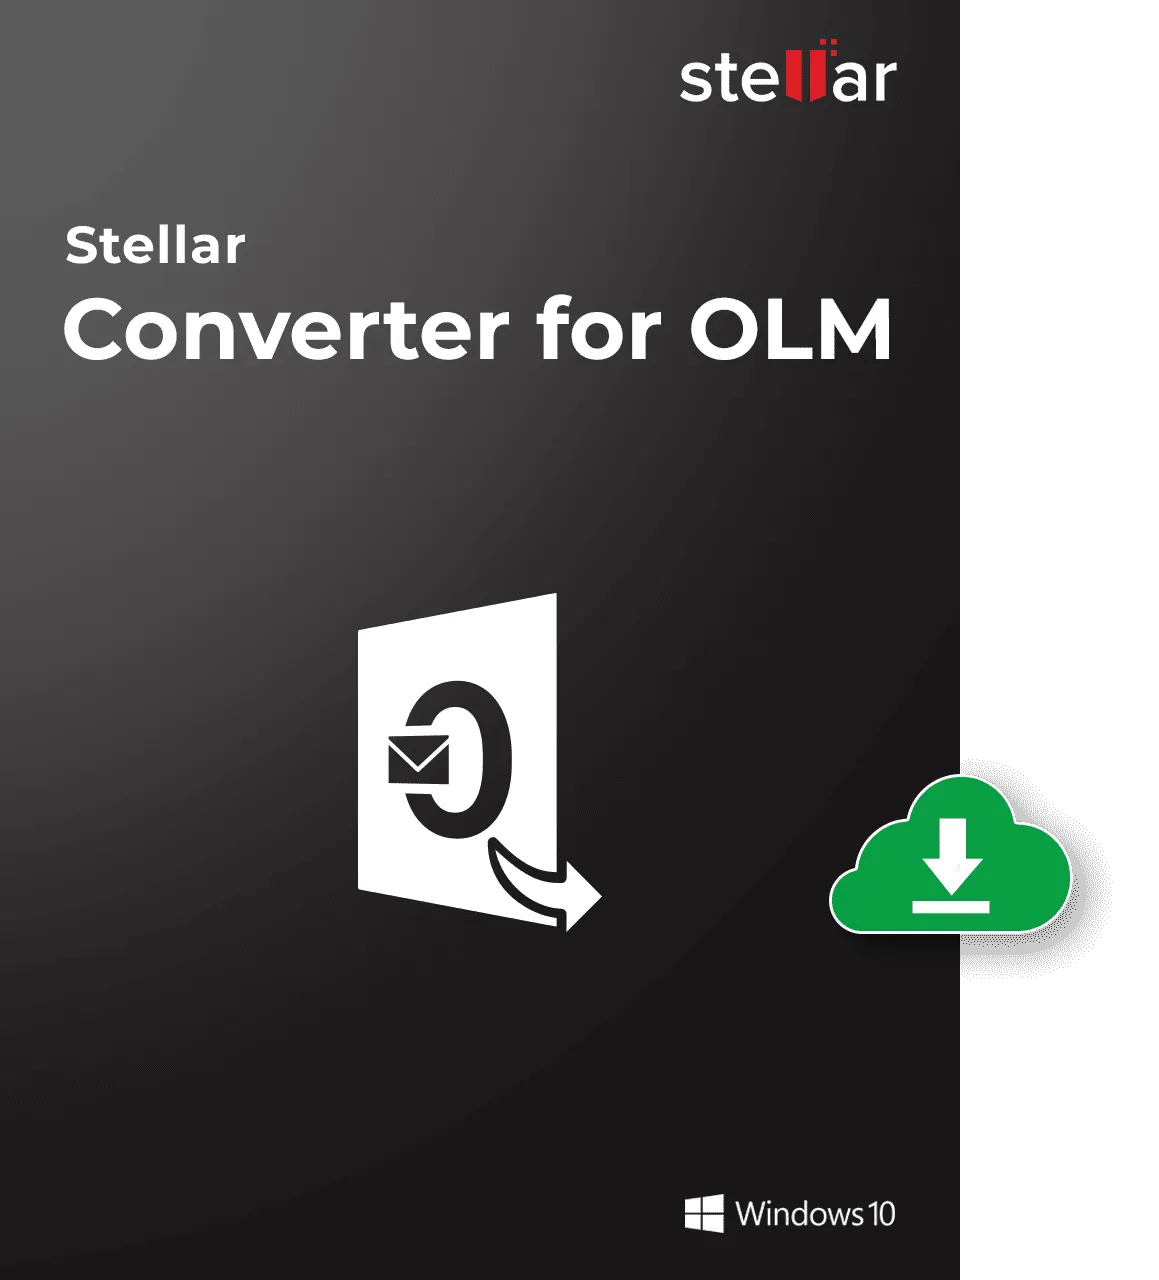  Converter For OLM Standard